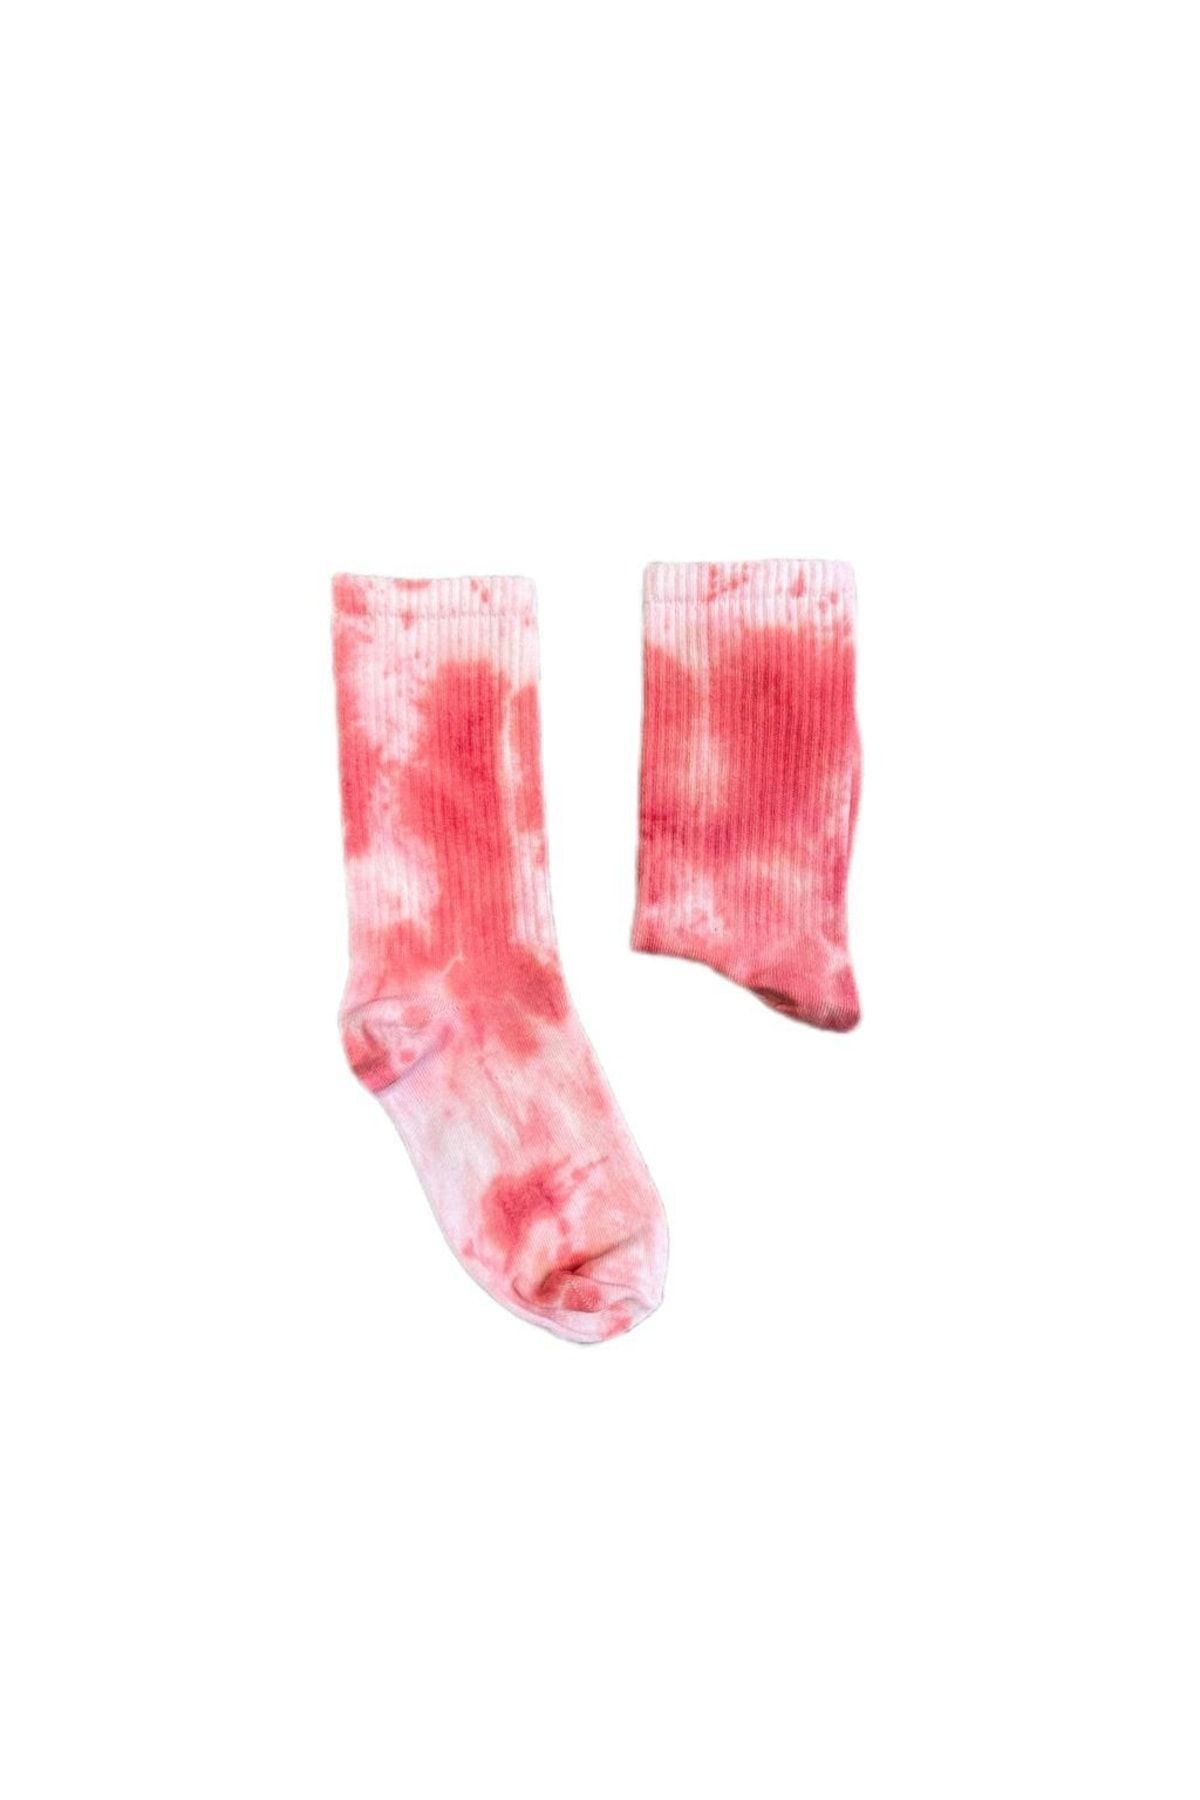 Kuzgunshop Batik (pembe-beyaz) Unisex Çorap